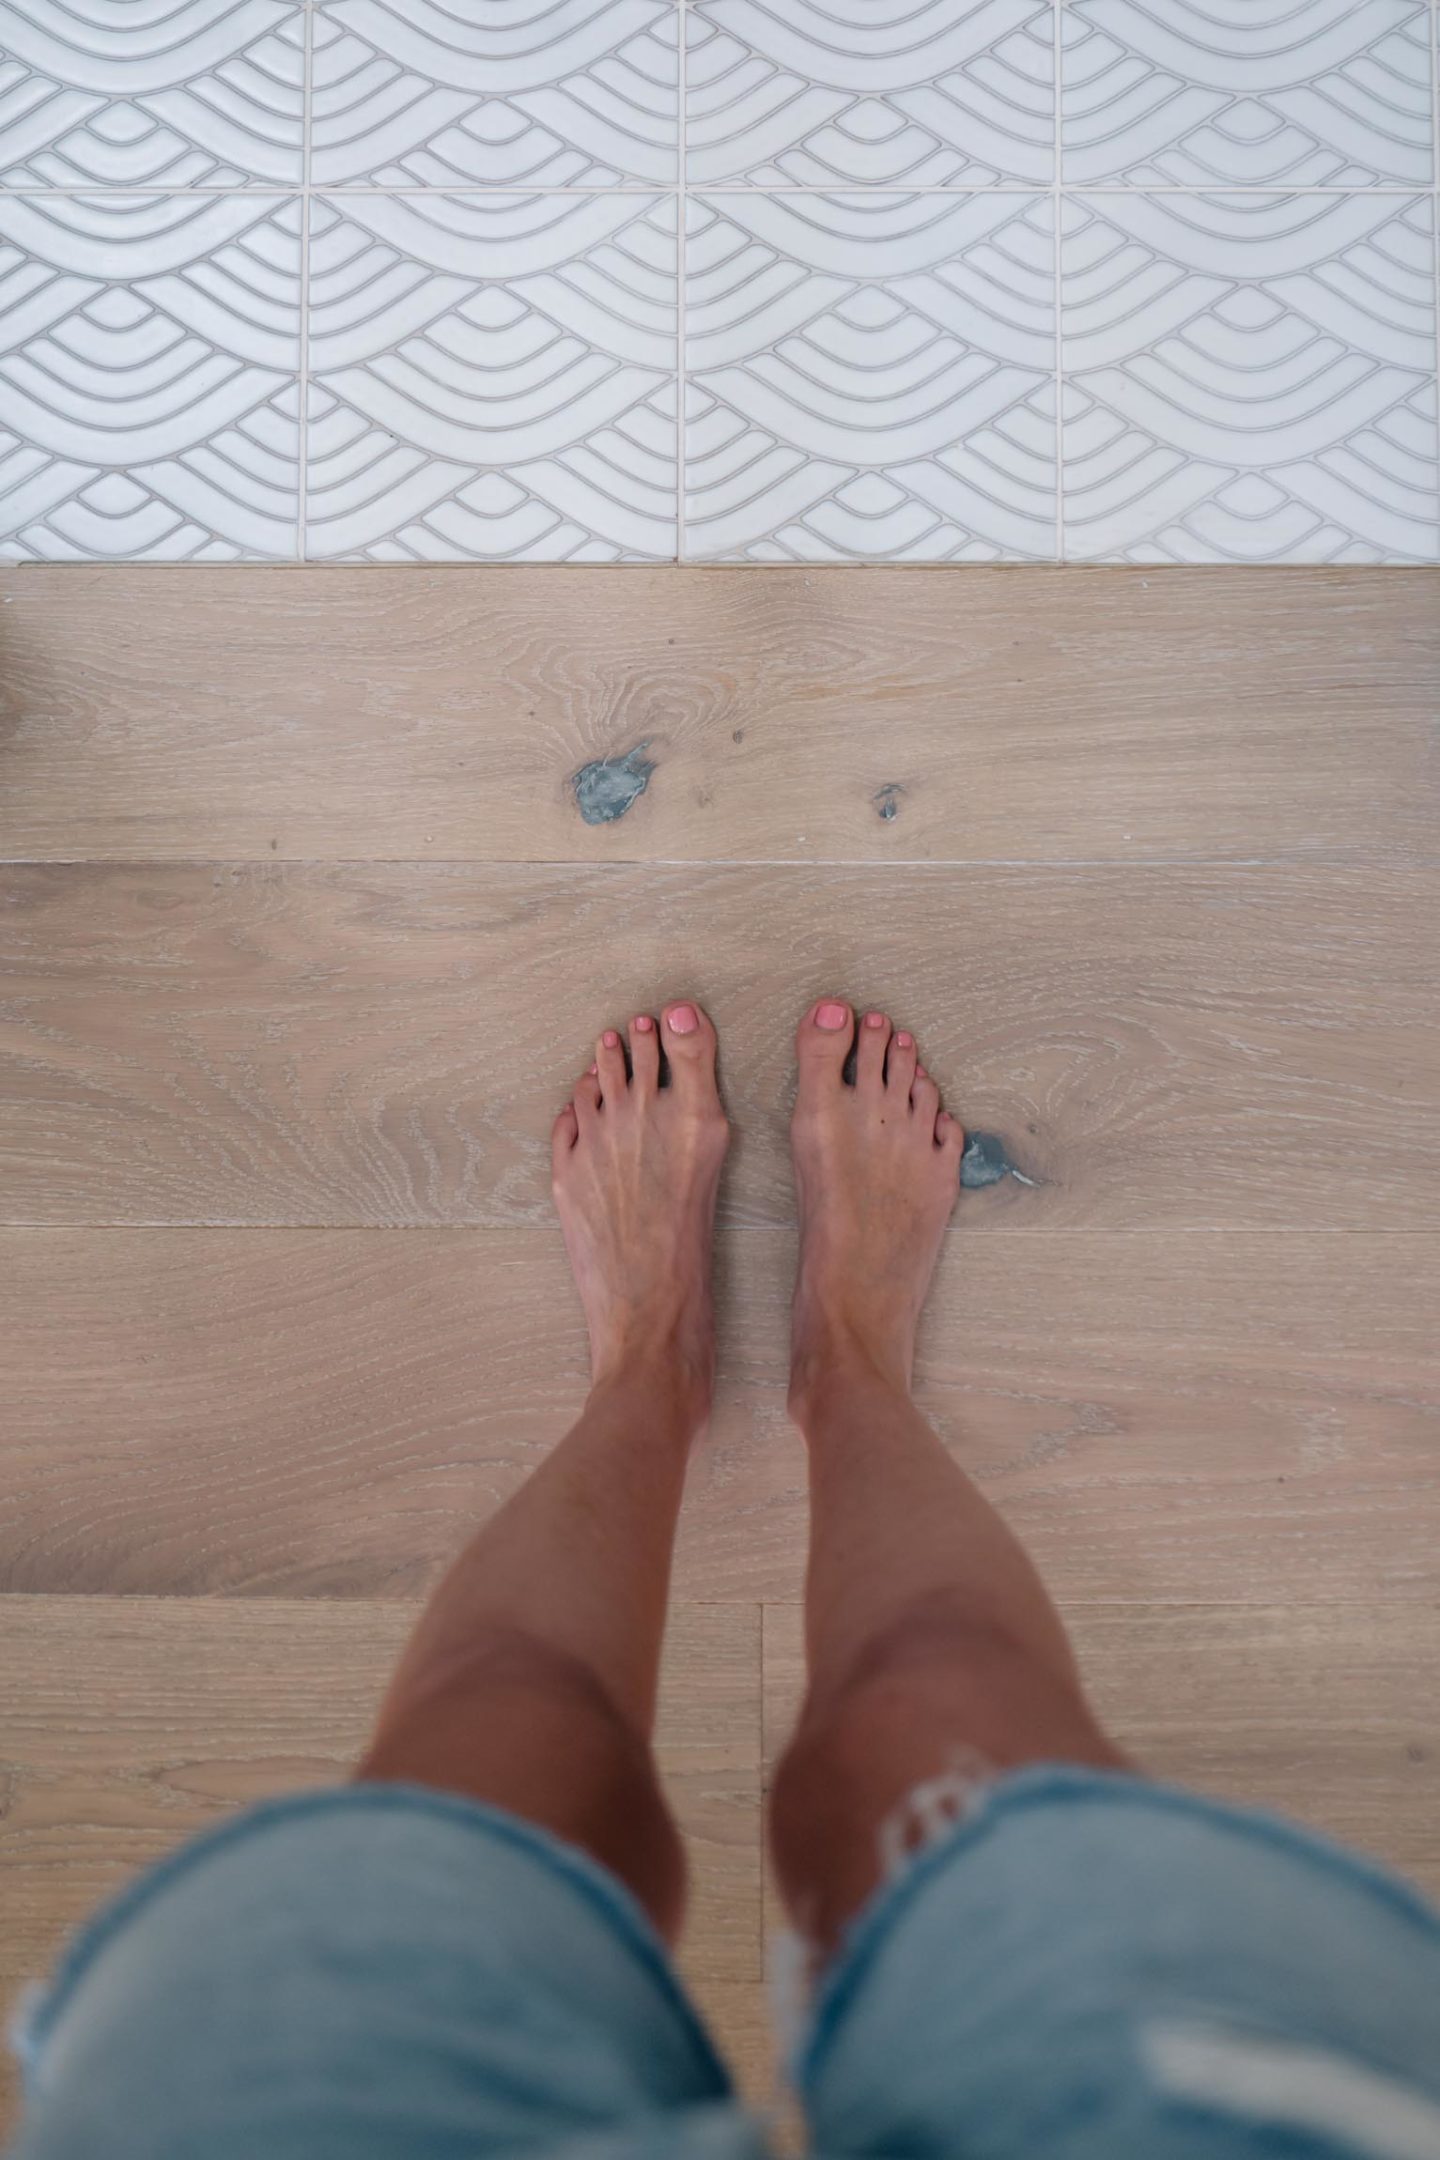 structured wood floor